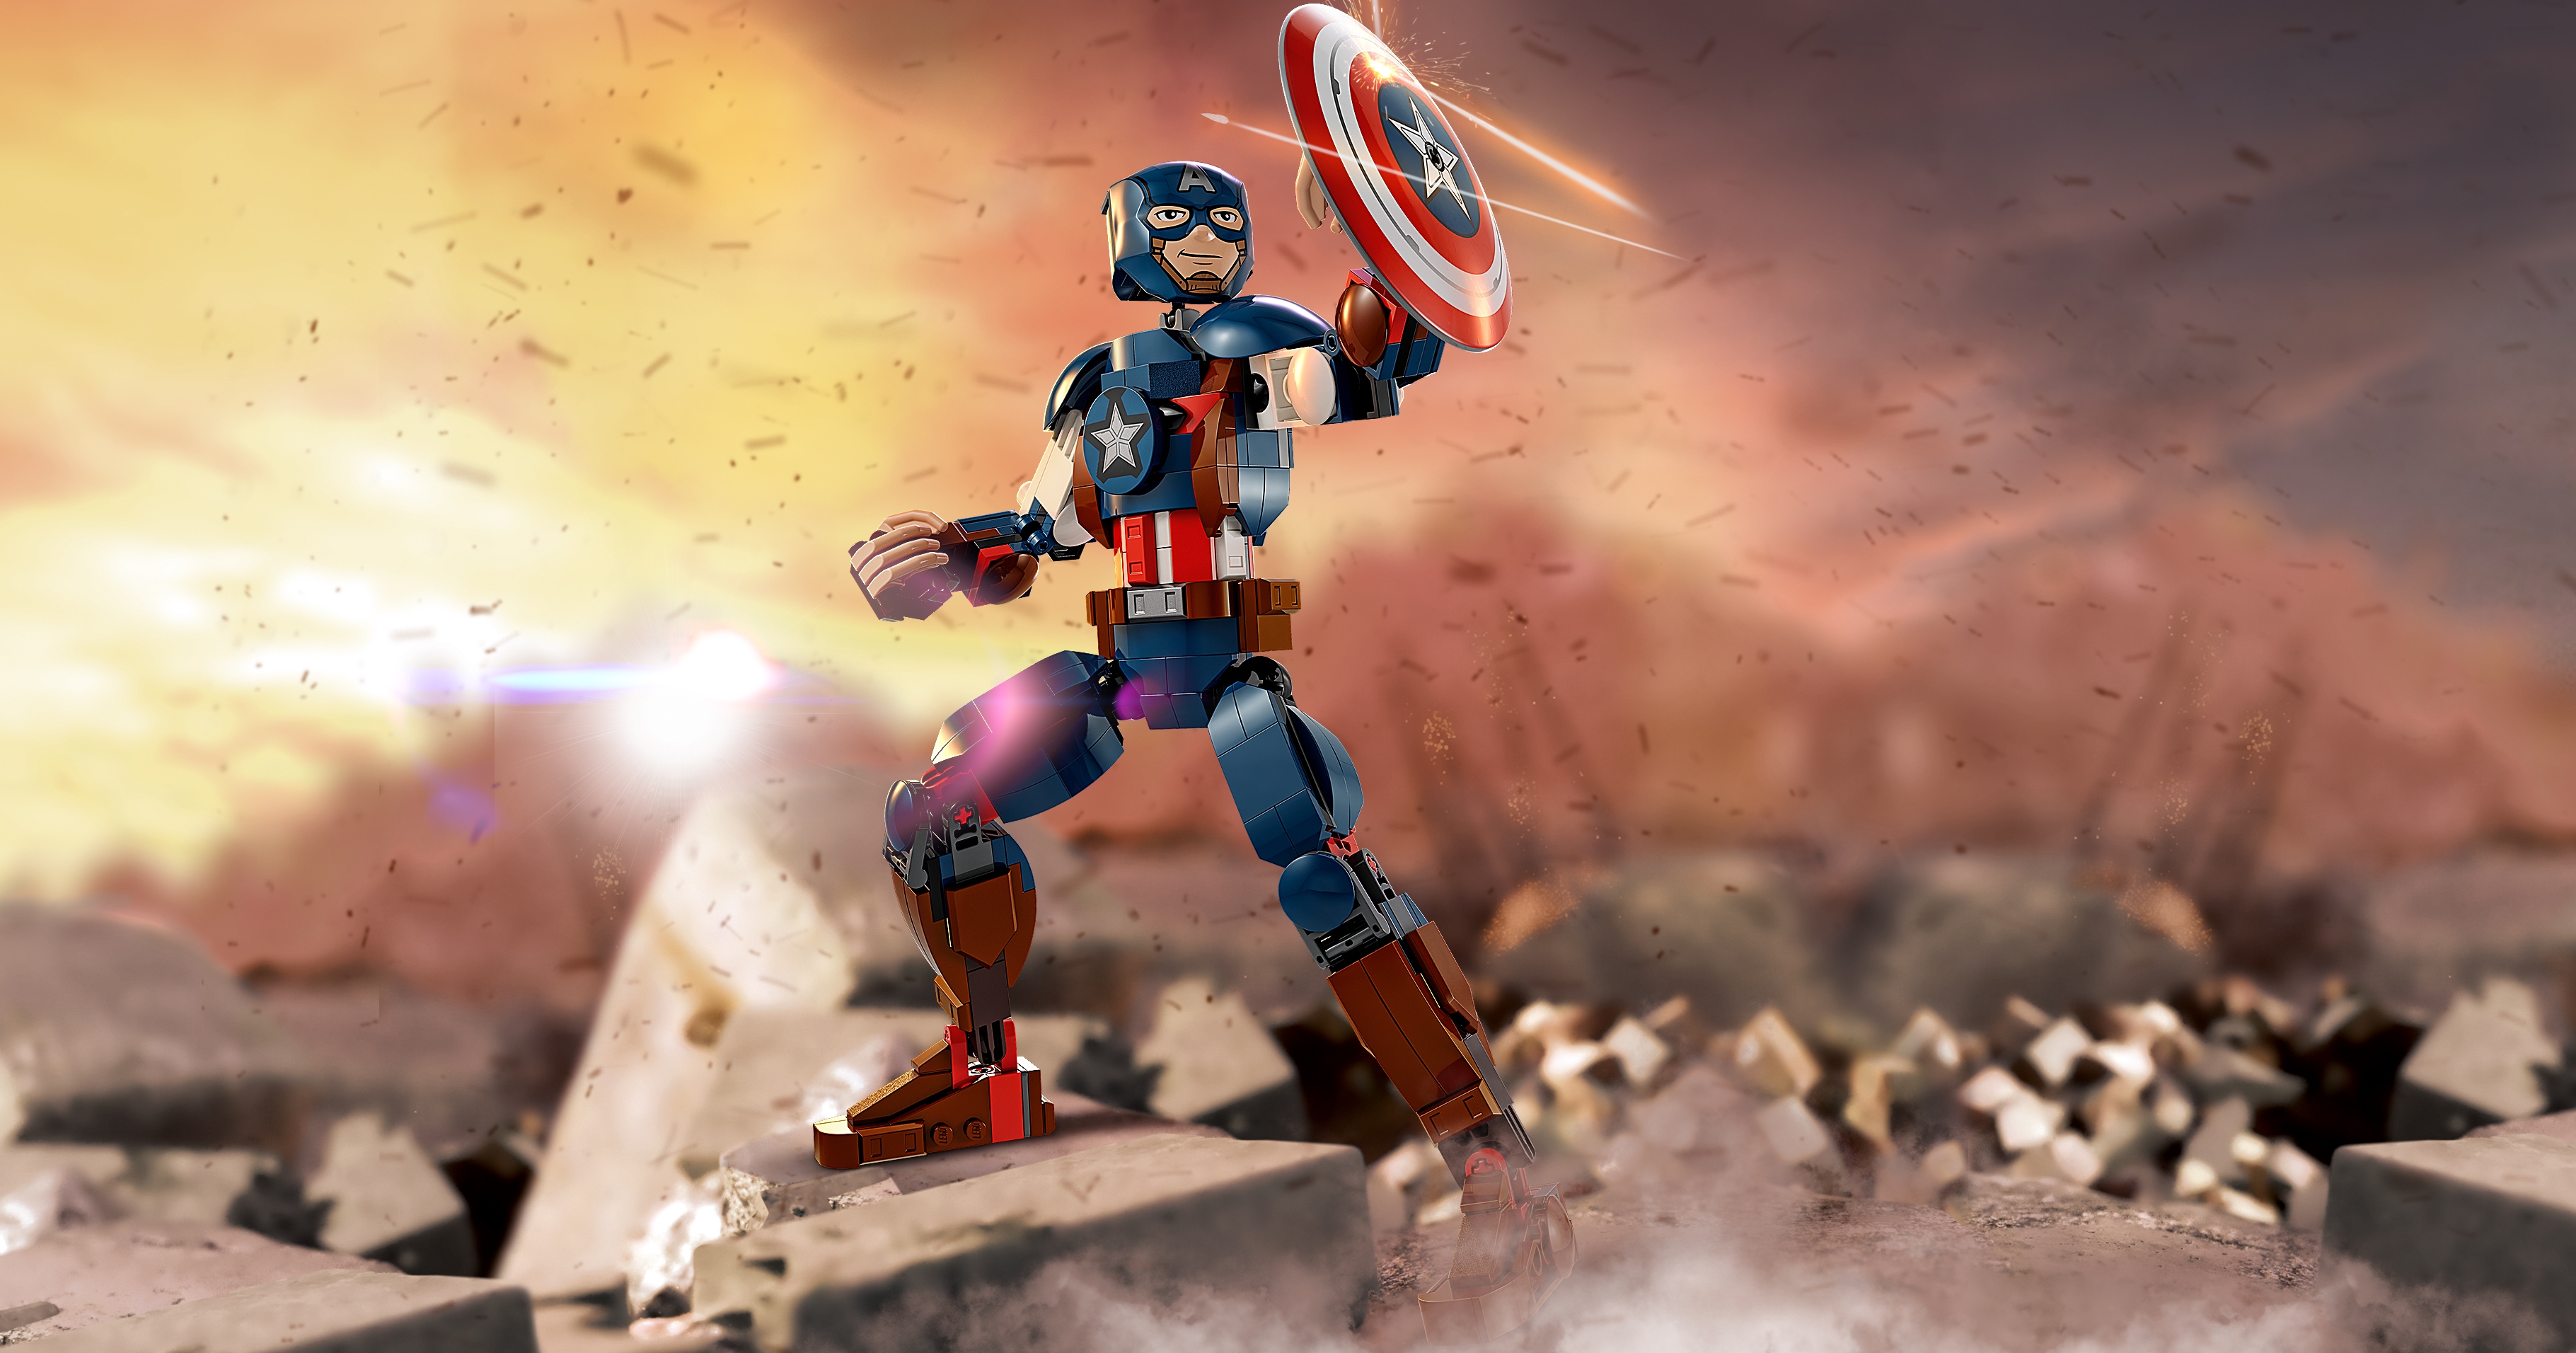 Captain America Construction Figure - Videos - LEGO.com for kids